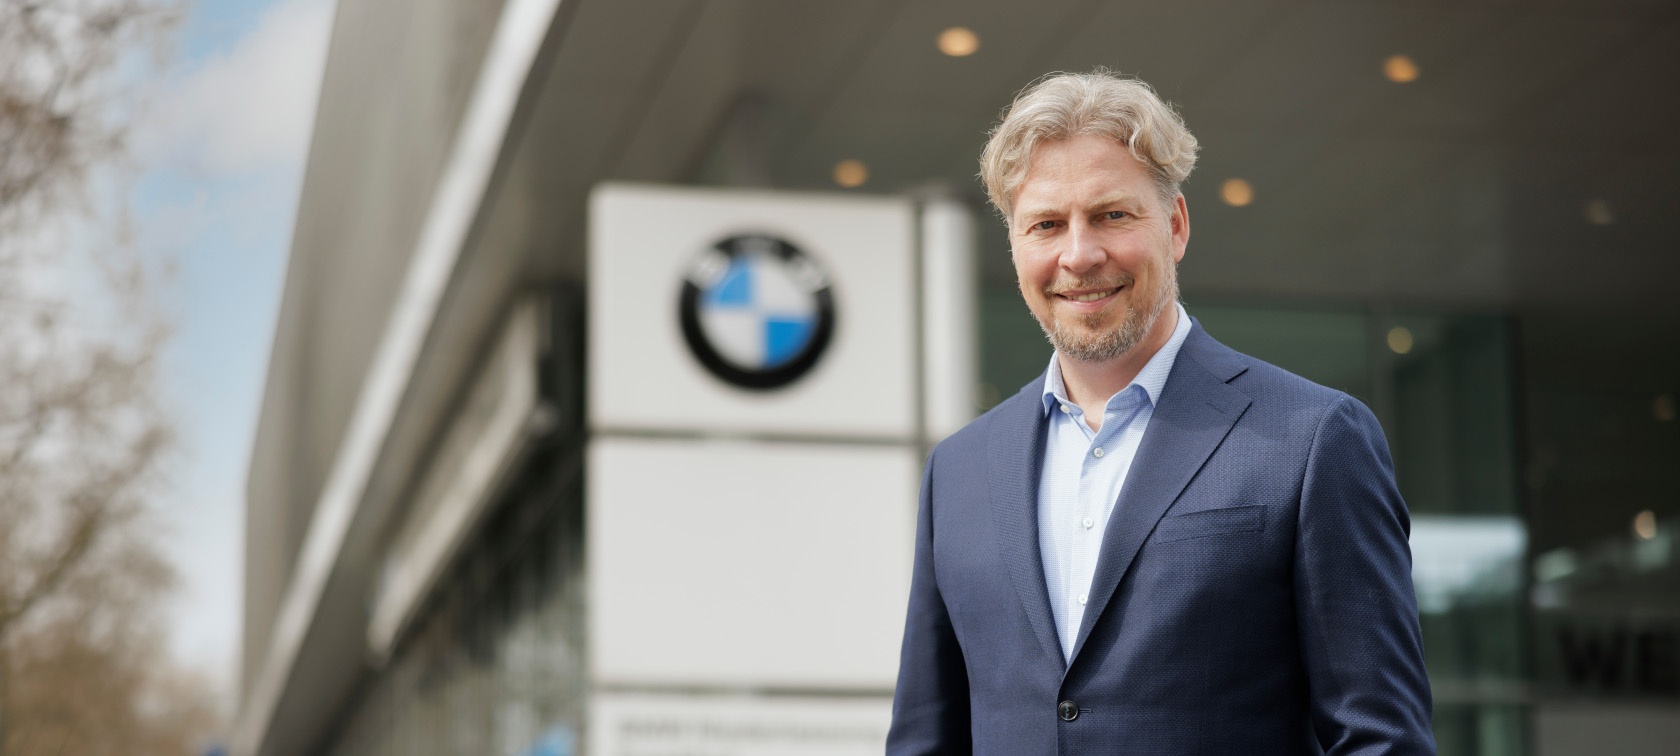 BMW Niederlassung München – Aktuelle Angebote & Services.